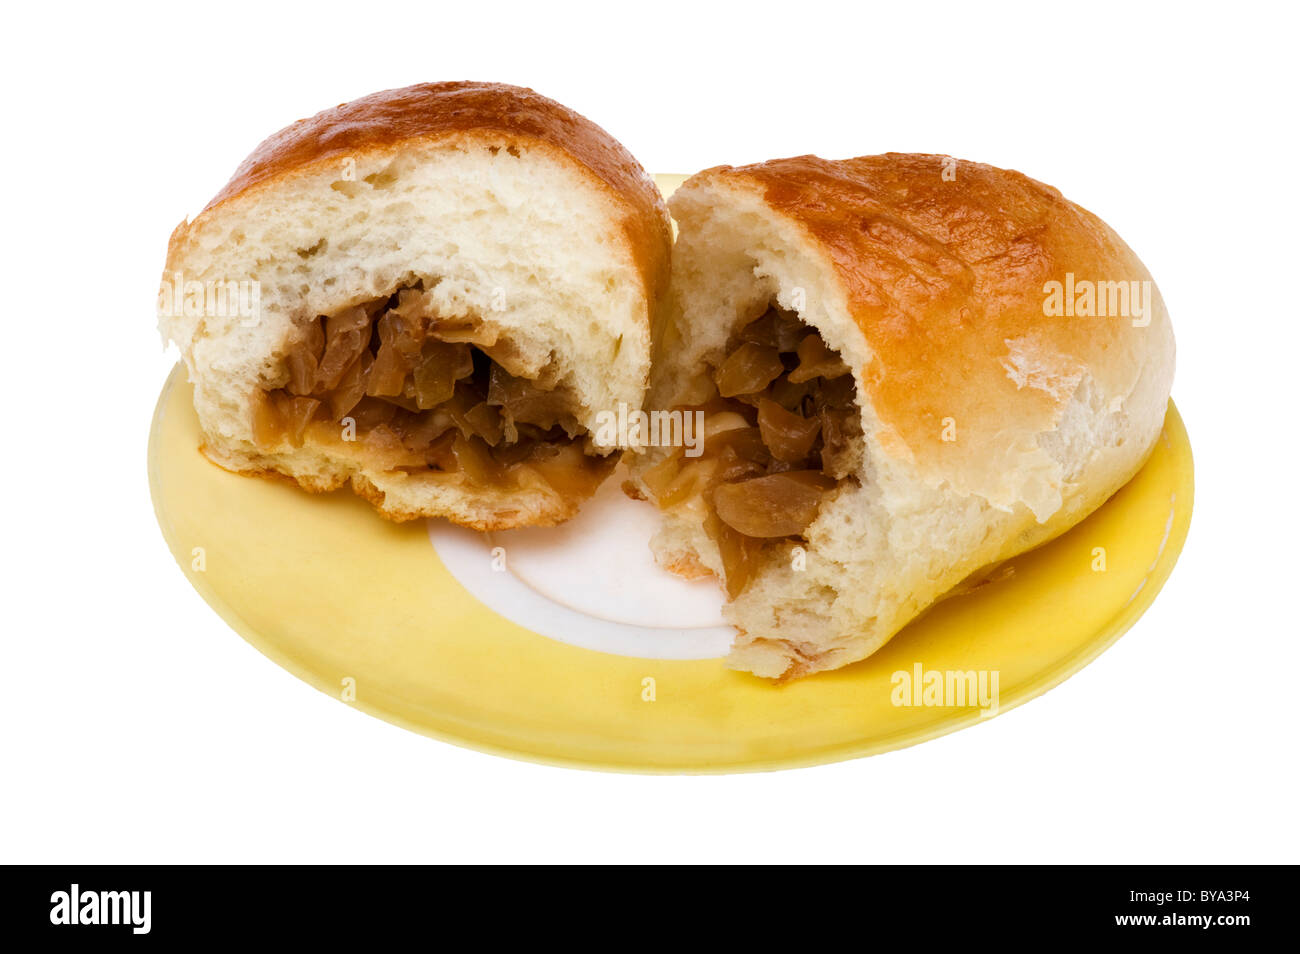 Objekt auf weiß - Essen-Pastetchen mit Kohl Stockfoto